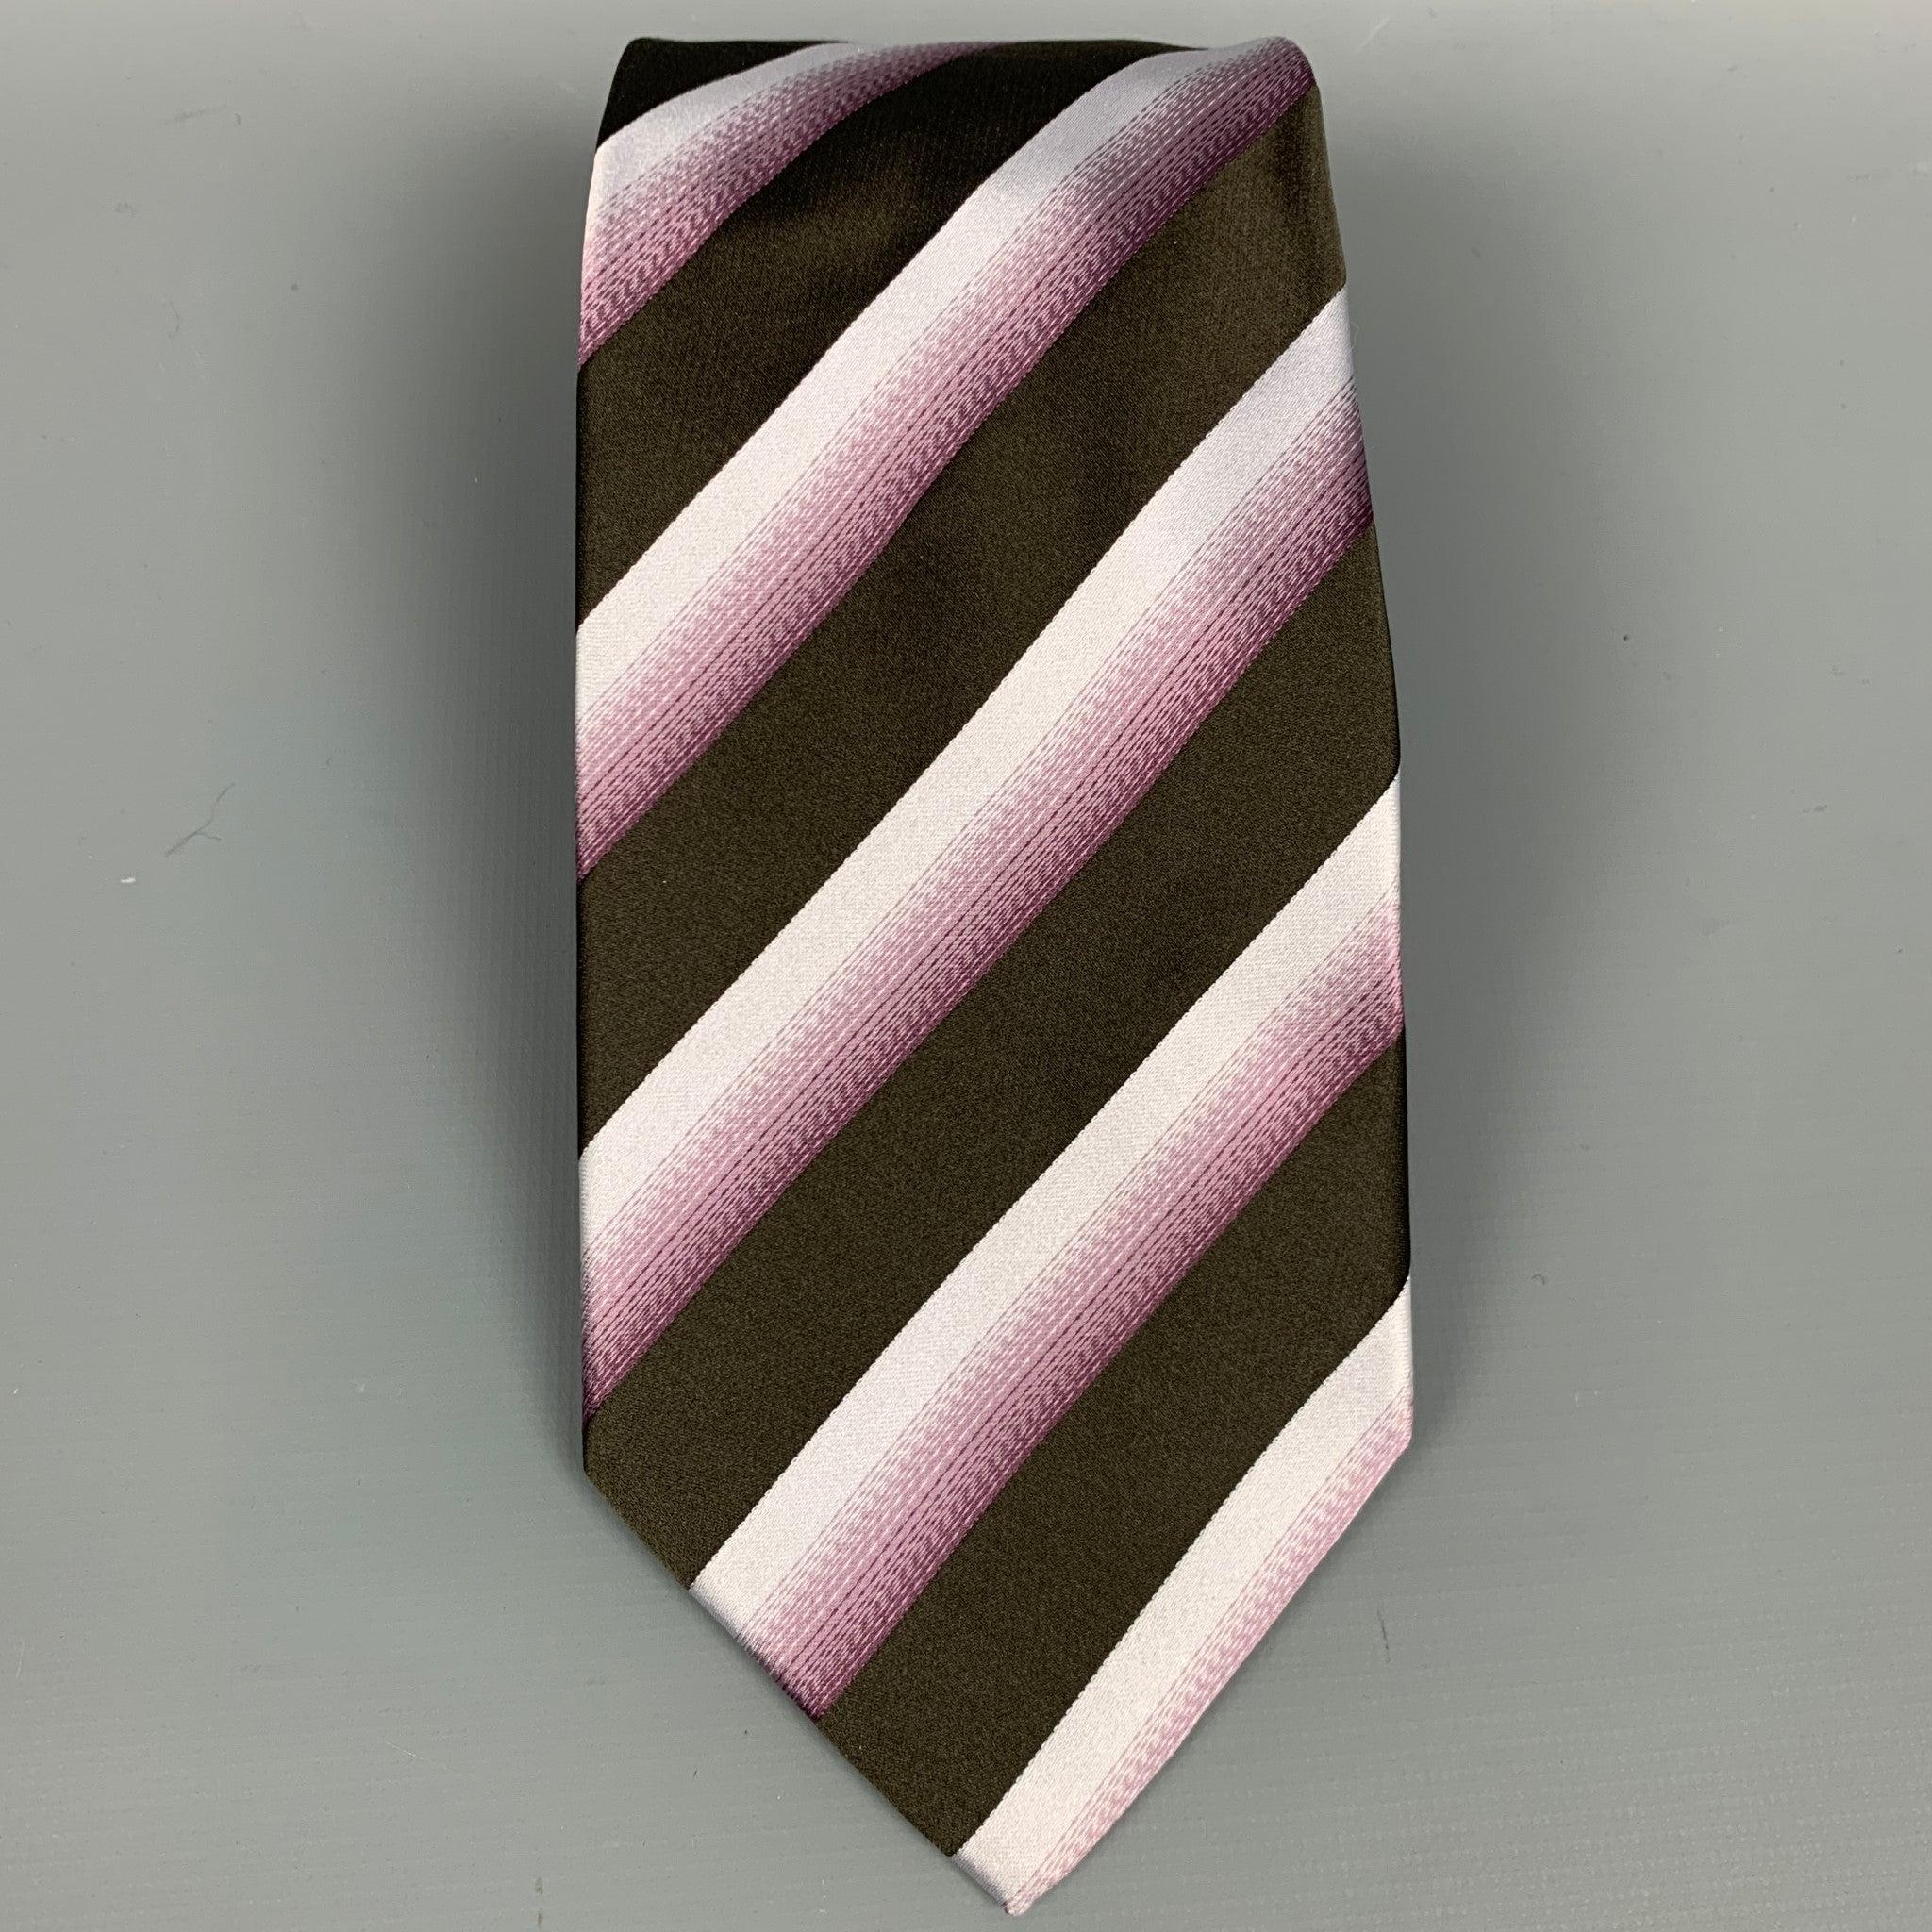 Die GIORGIO ARMAN Krawatte ist aus brauner und violetter Seide mit diagonalen Streifen. Made in Italy. sehr guter gebrauchter Zustand. 

Abmessungen: 
  Breite: 3,75 Zoll  
  
  
 
Referenz: 82199
Kategorie: Krawatte
Mehr Details
    
Marke: 